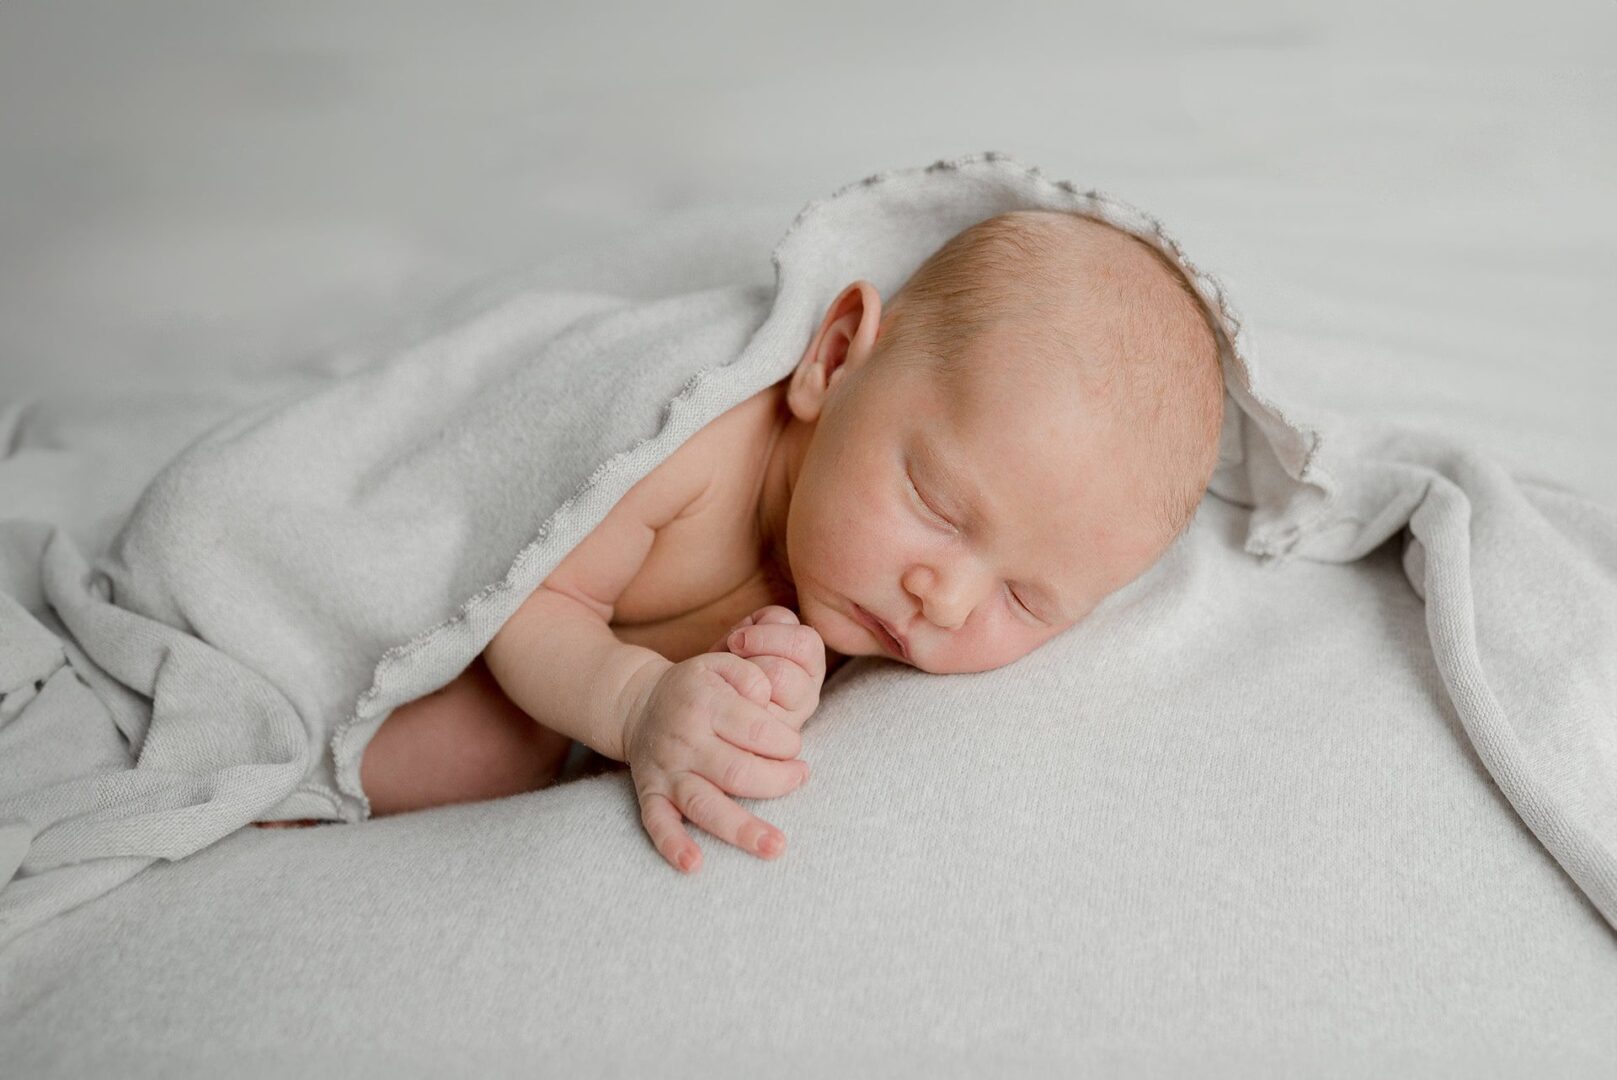 nouveau-né endormi sur un tissu gris clair